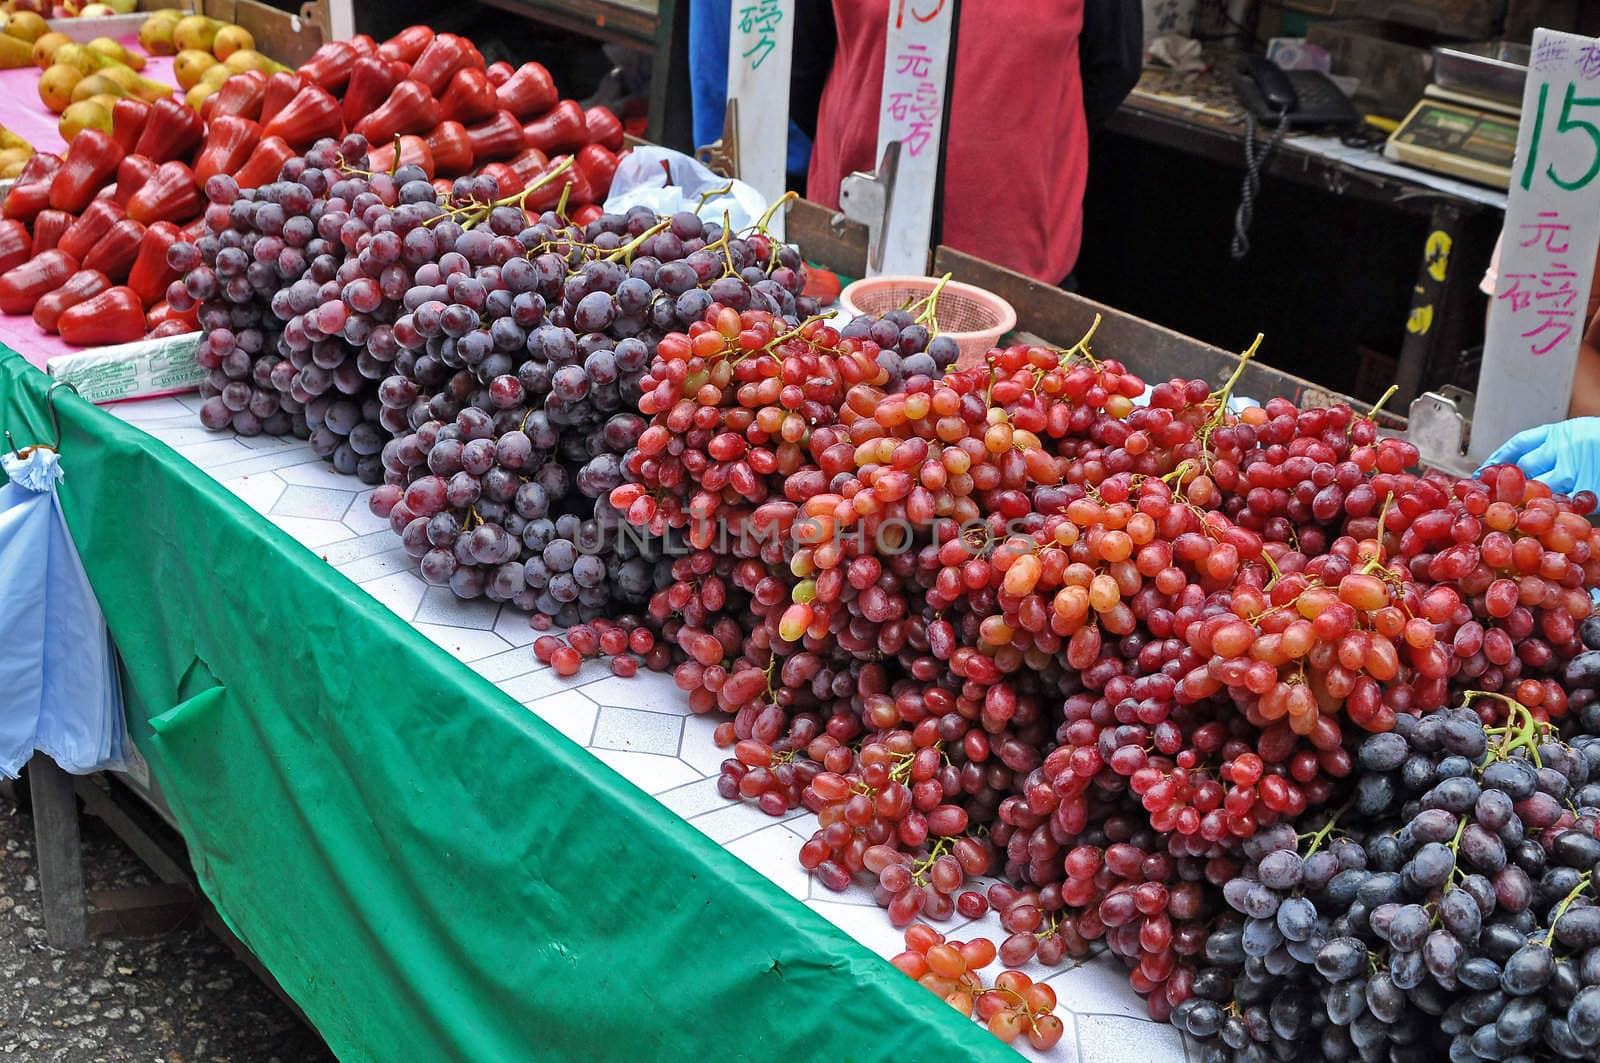 Fruit market by anlu